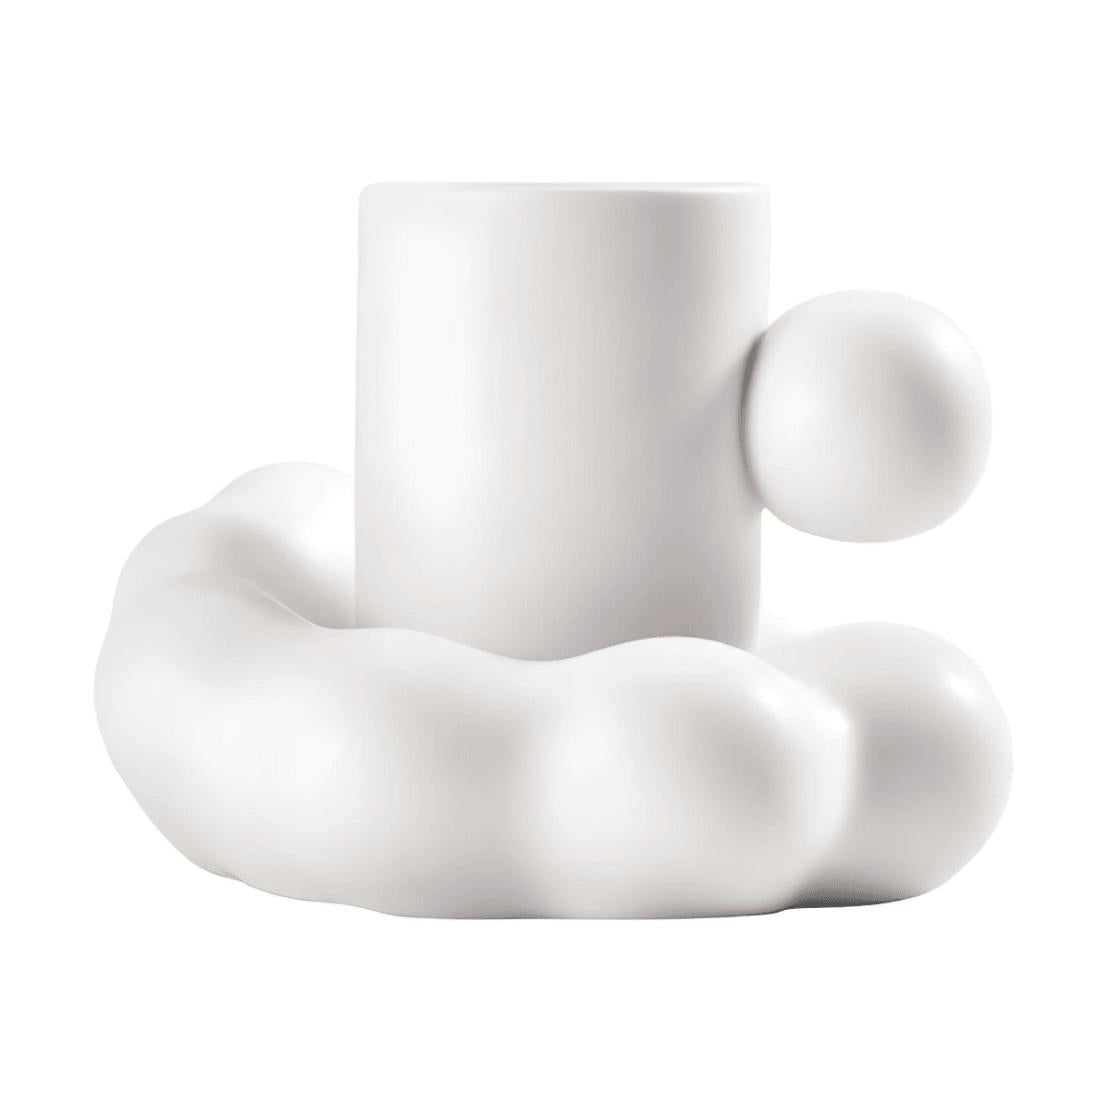 White ball handle mug with cloud saucer